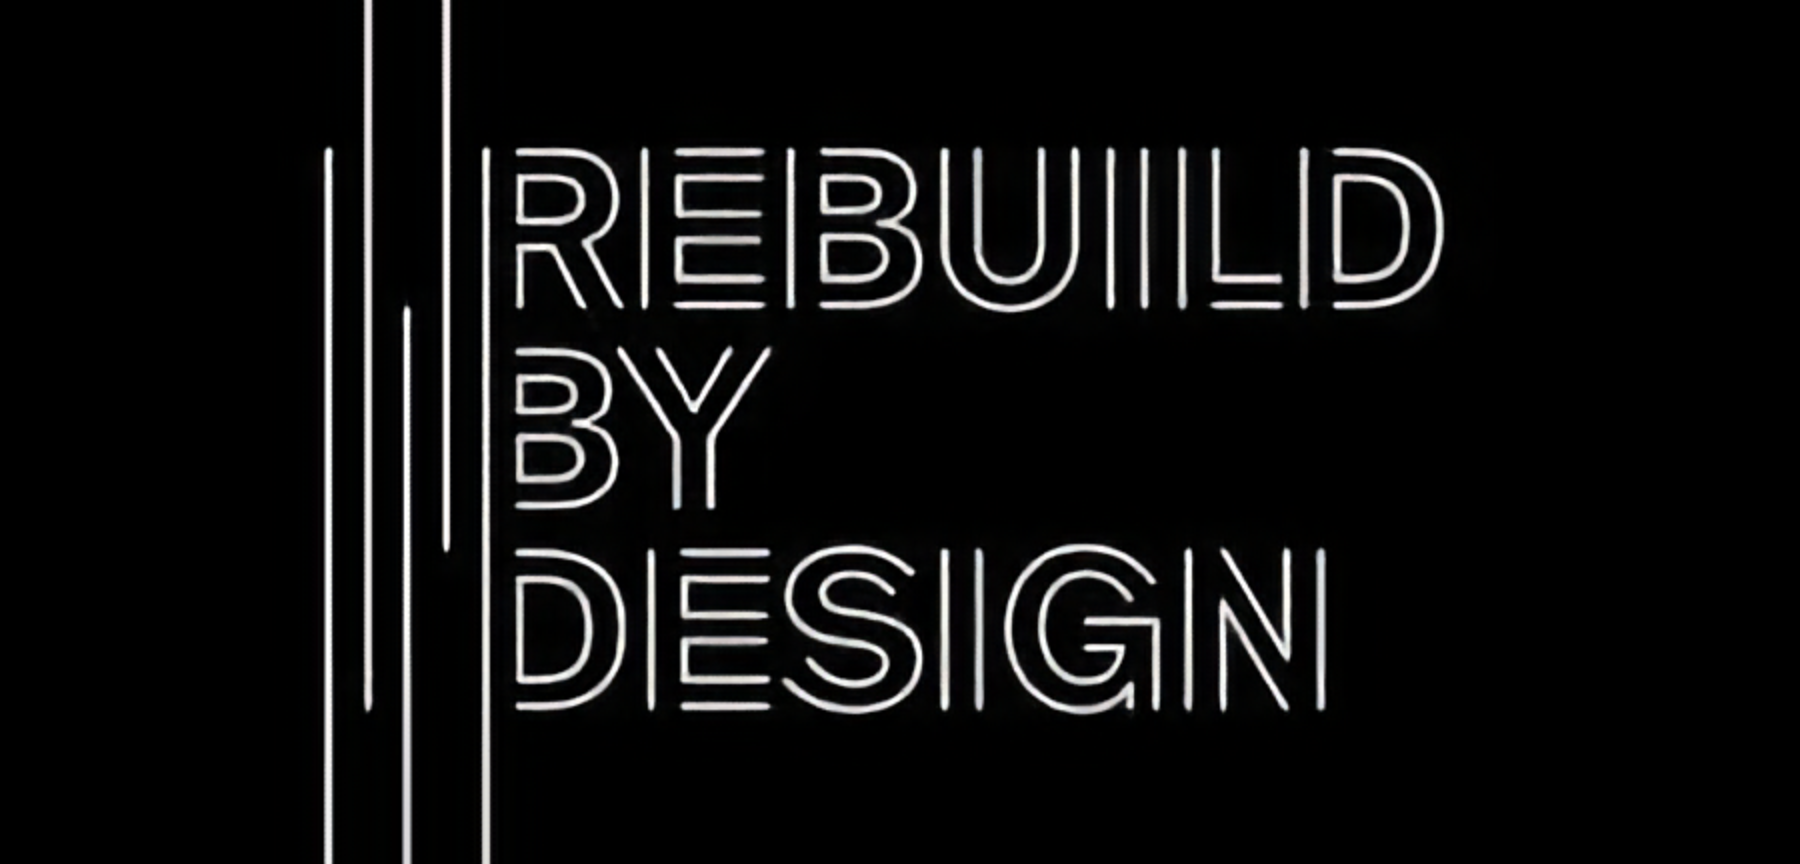 Rebuild by Design